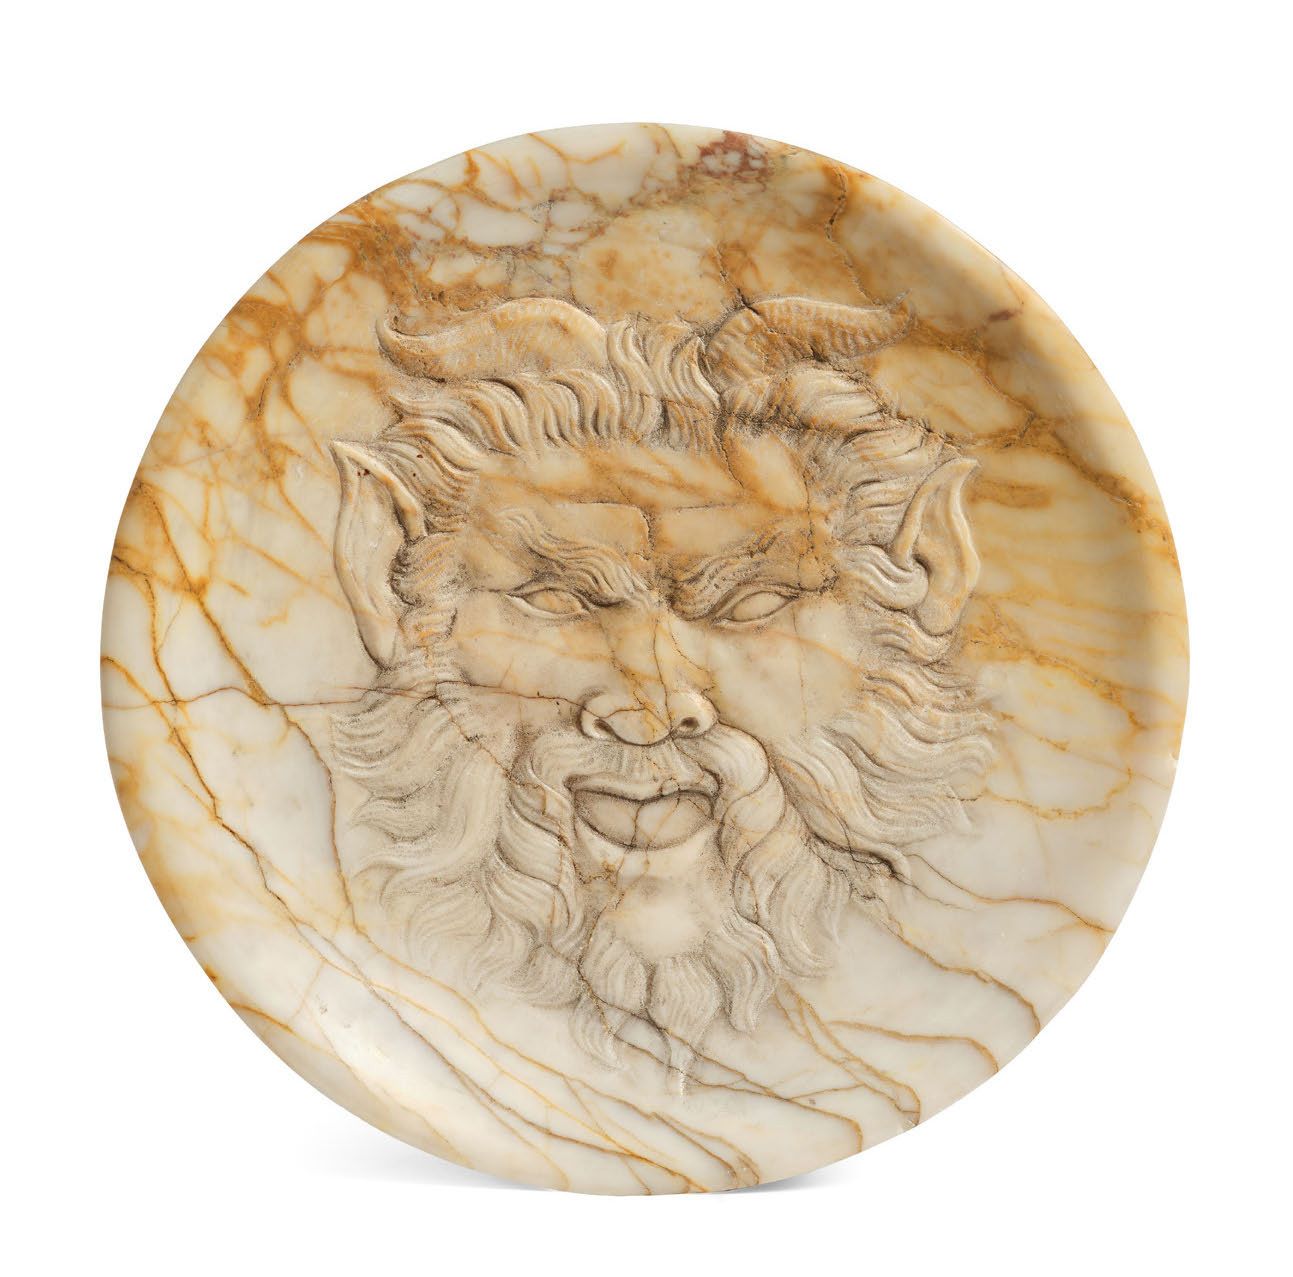 Null "兽人之牙
石质圆碗，置于锡耶纳大理石基座上，以浮雕的方式雕刻了一张精灵的脸。底座的背面有E.C.的签名。意大利，可能是锡耶纳地区，17世纪。
高度：&hellip;